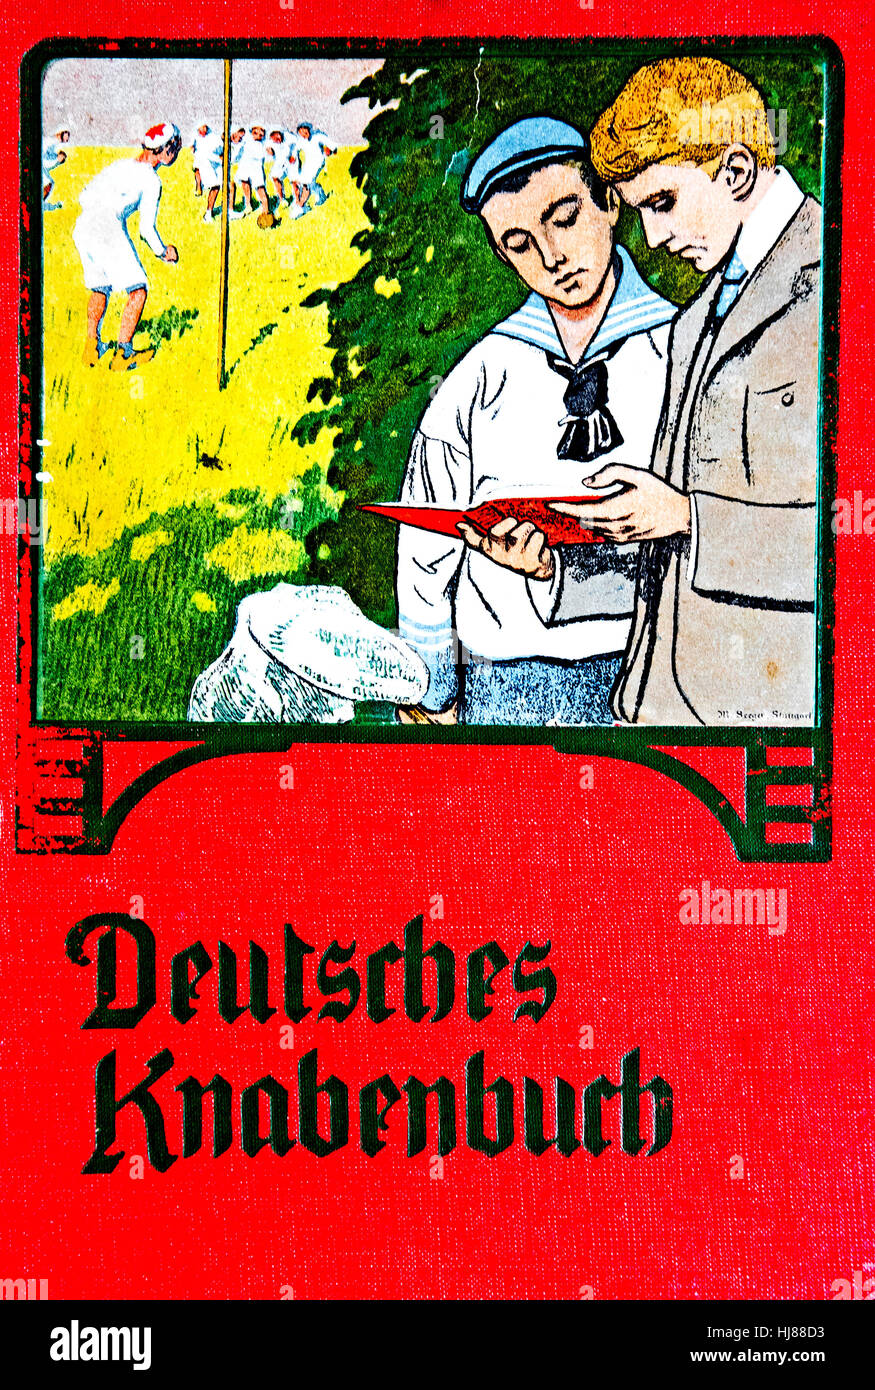 La copertura di libri per bambini (edizione tedesca); cover von Jugendbuch (deutsch) Foto Stock